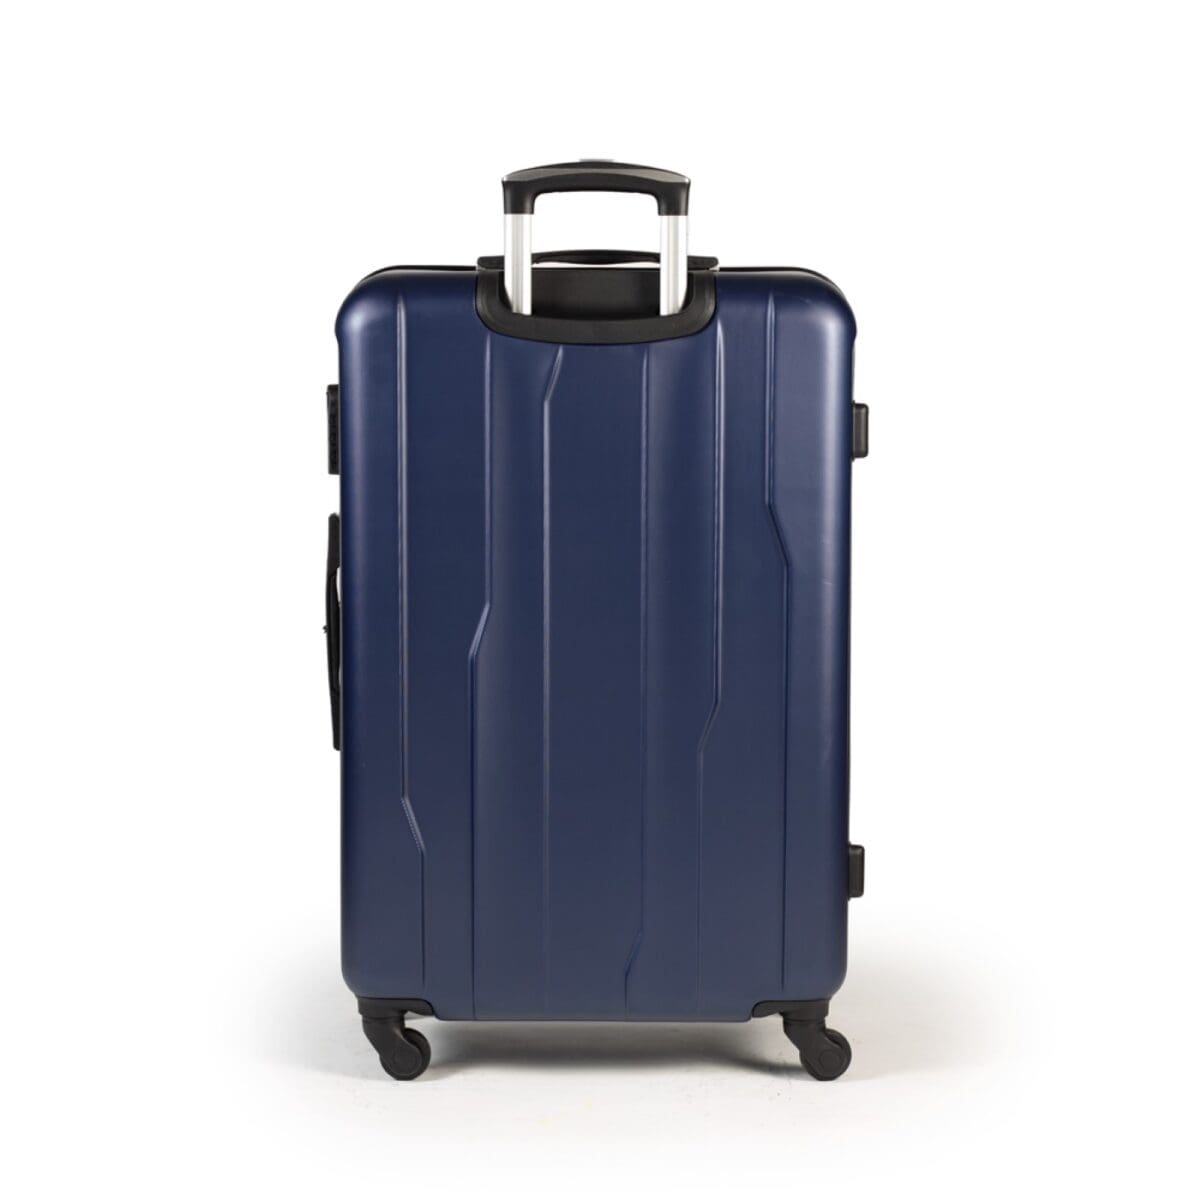 πίσω πλευρά βαλίτσας μπλε χρώμα